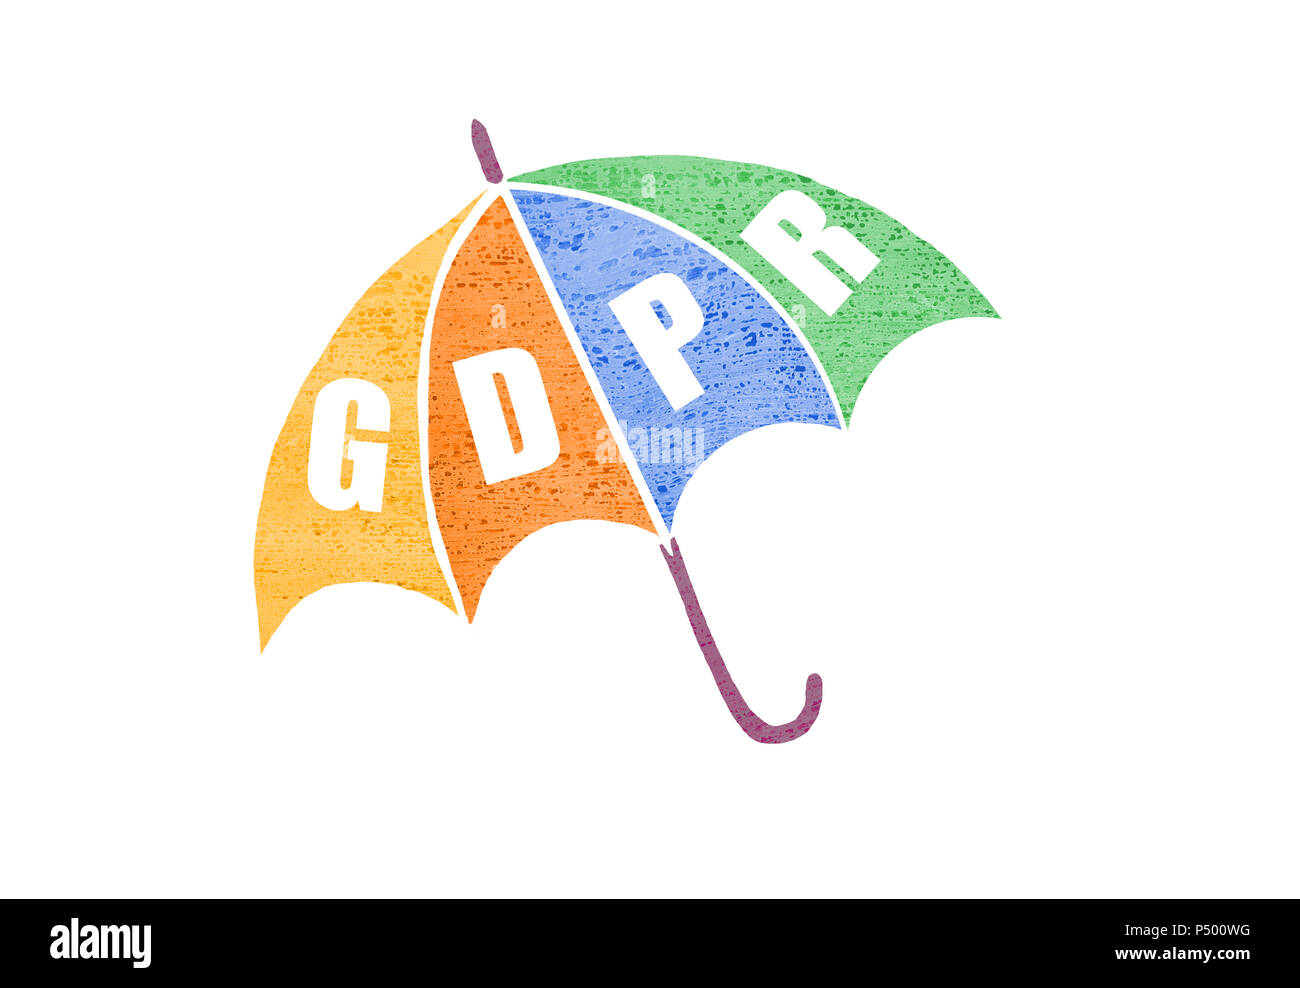 Bipr Konzept Abbildung. Allgemeine Datenschutzverordnung Abkürzung - Bipr - auf einem Regenschirm als Symbol für den Schutz der Privatsphäre. Stockfoto